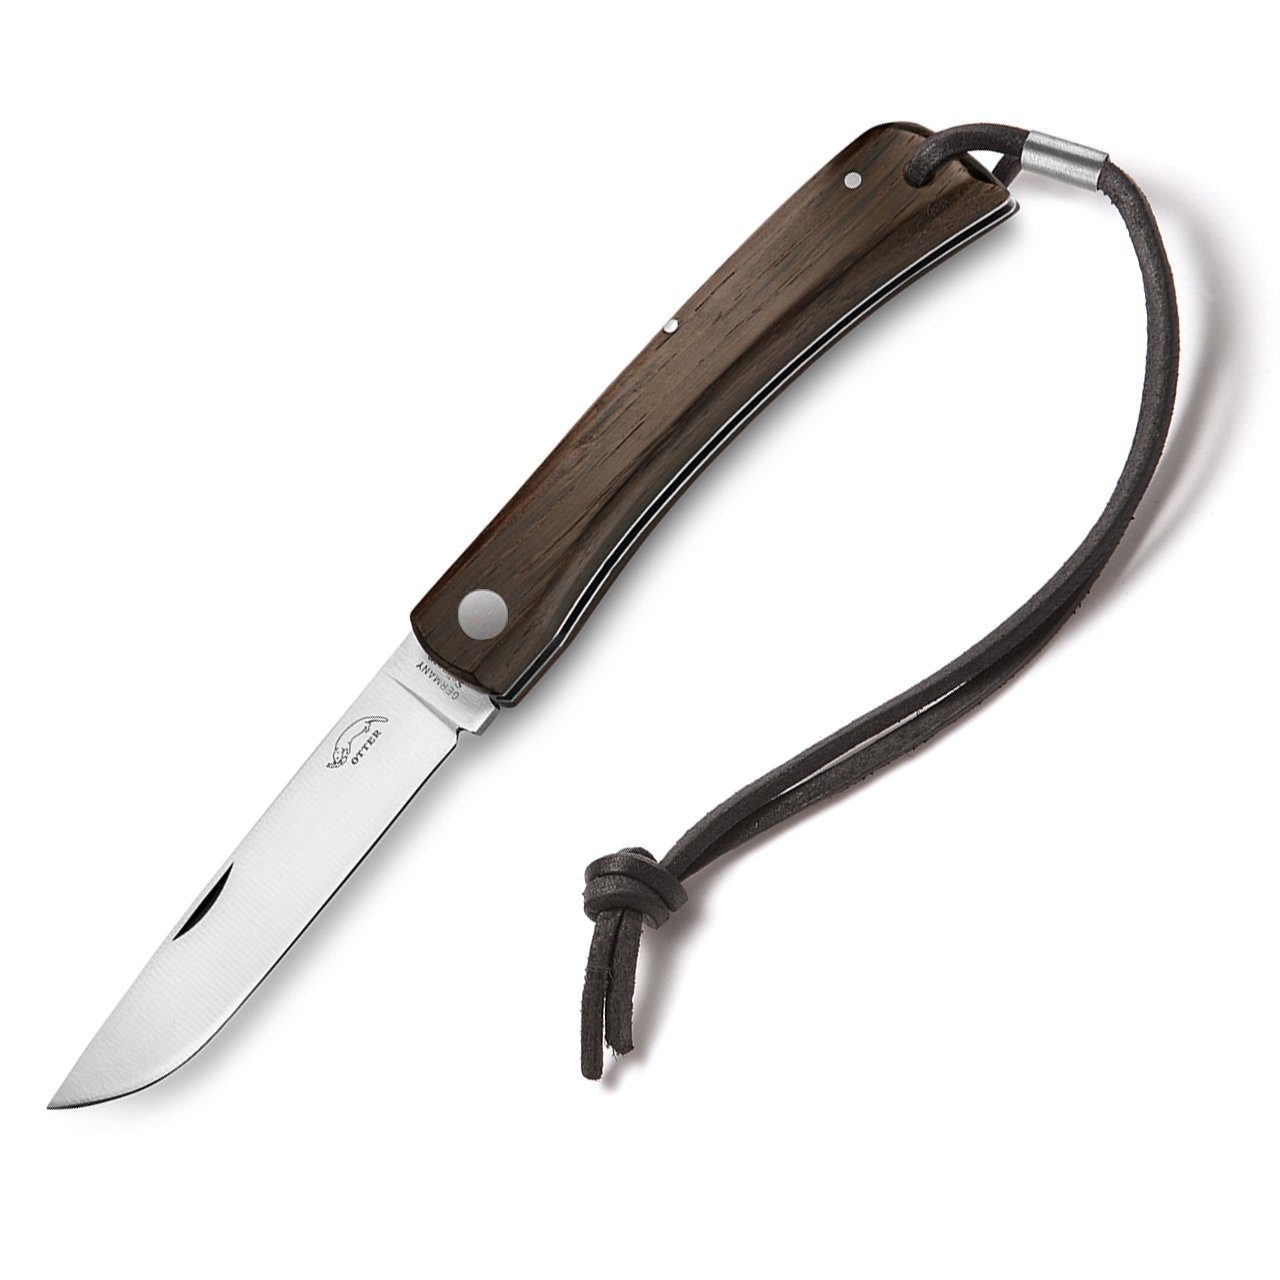 Otter Messer Taschenmesser Hippekniep groß Räuchereiche mit Lederband, Klinge Carbonstahl, Slipjoint